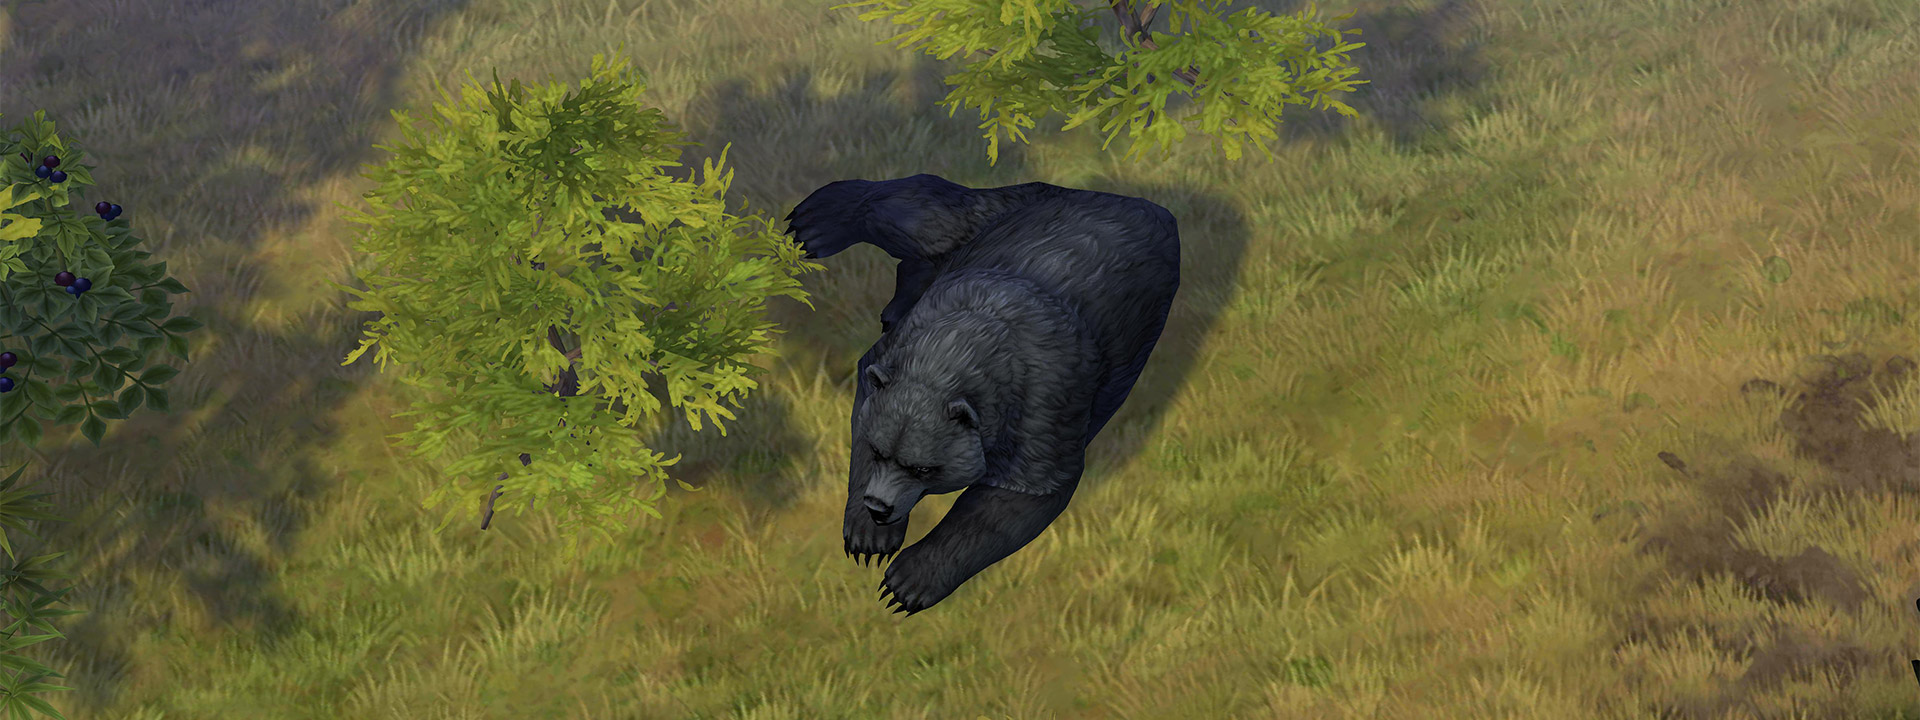 beast_black_bear.jpg